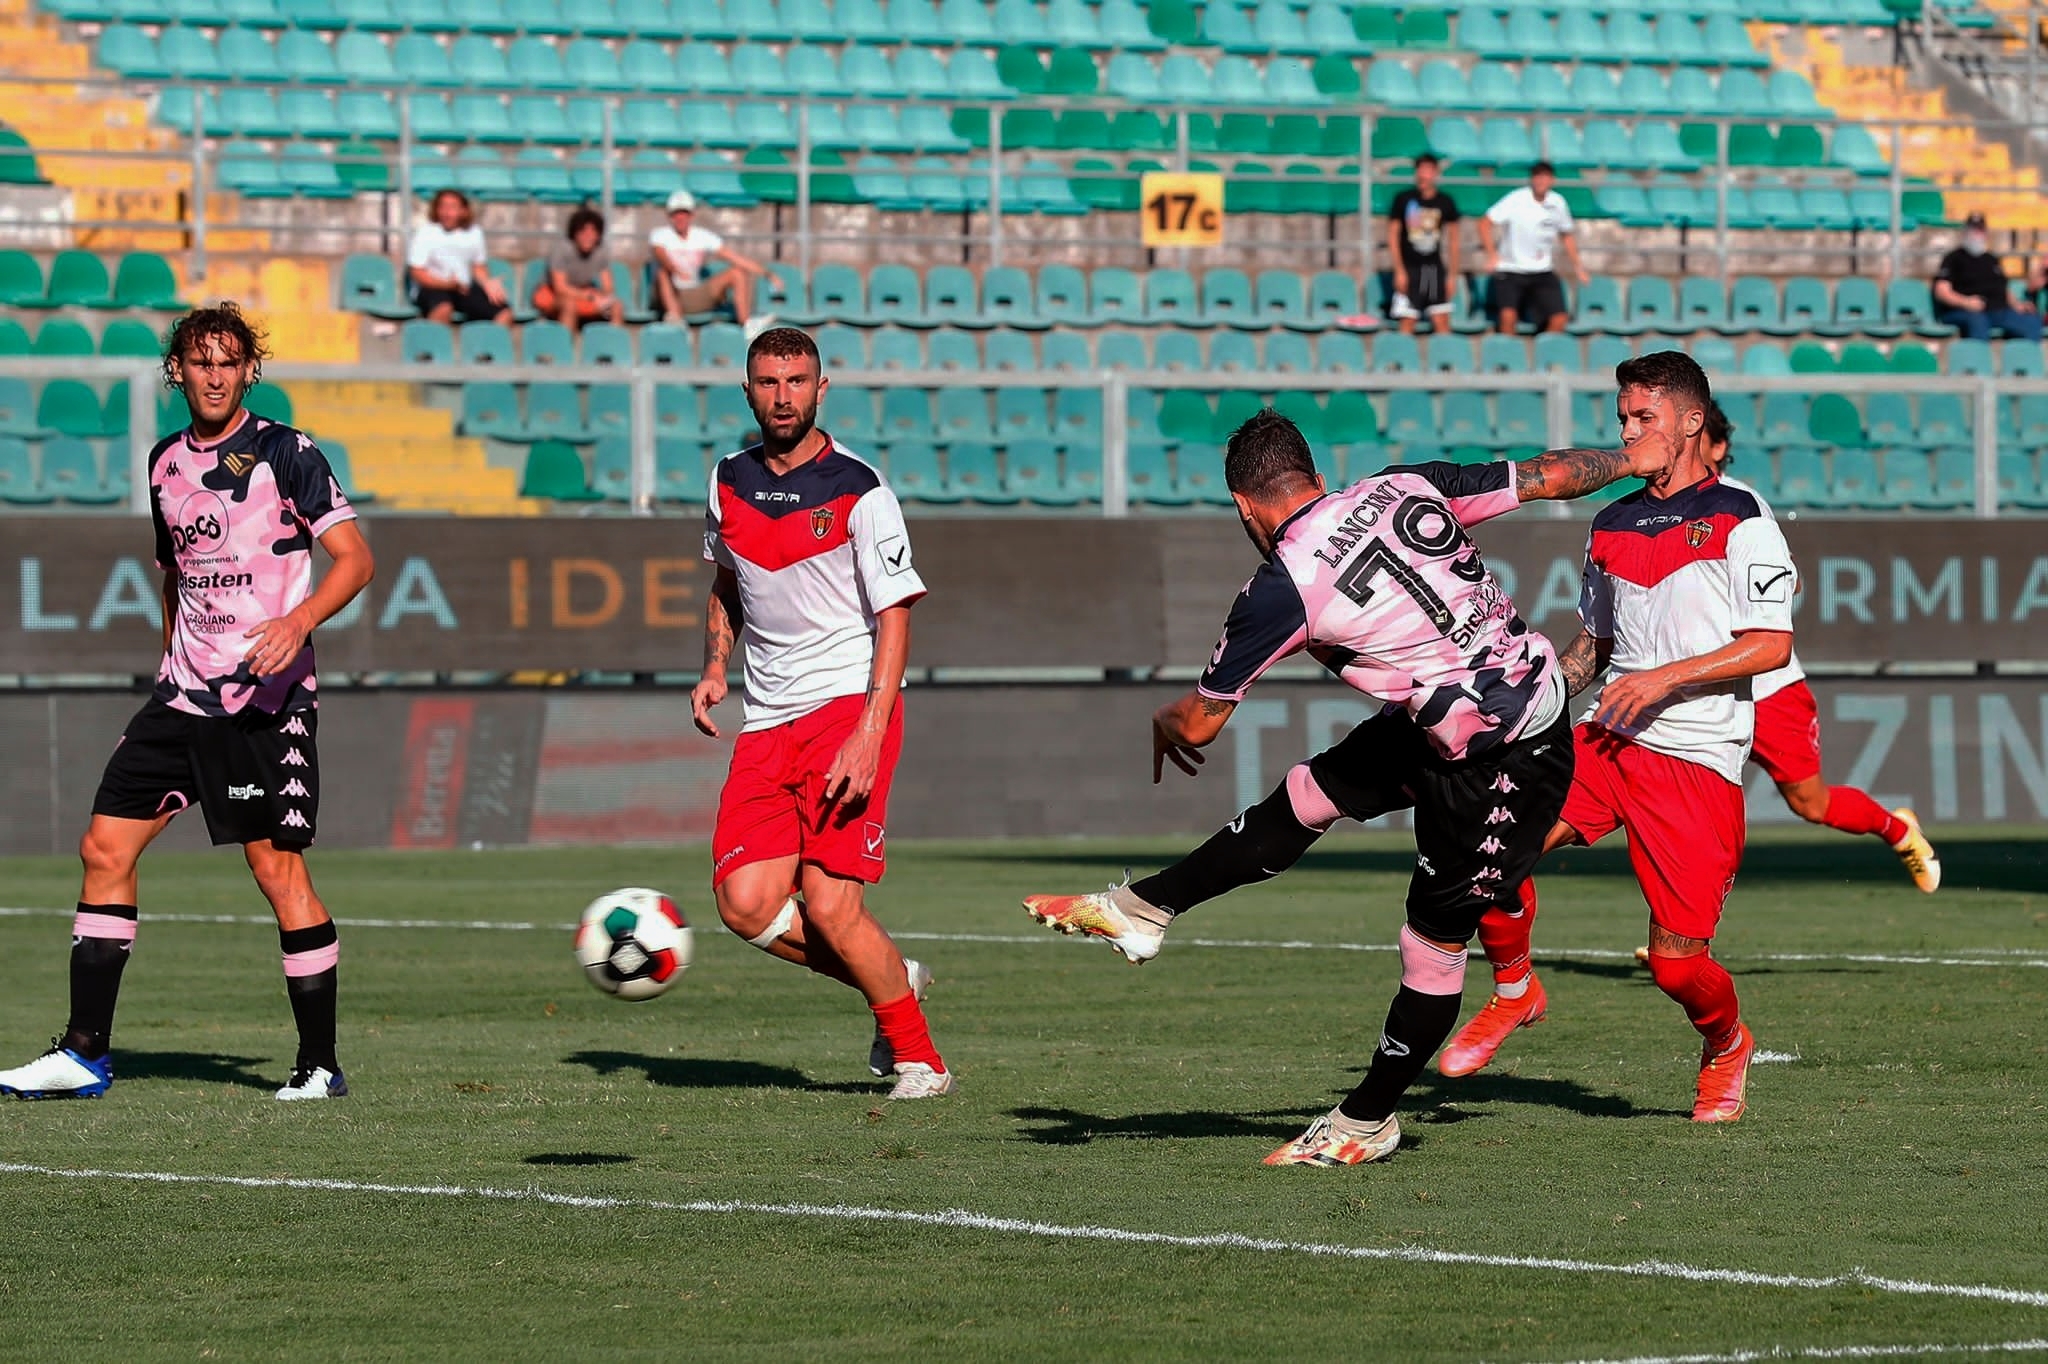 Coppa Italia, il Palermo convince: 4-1 contro il Picerno. E passa il turno